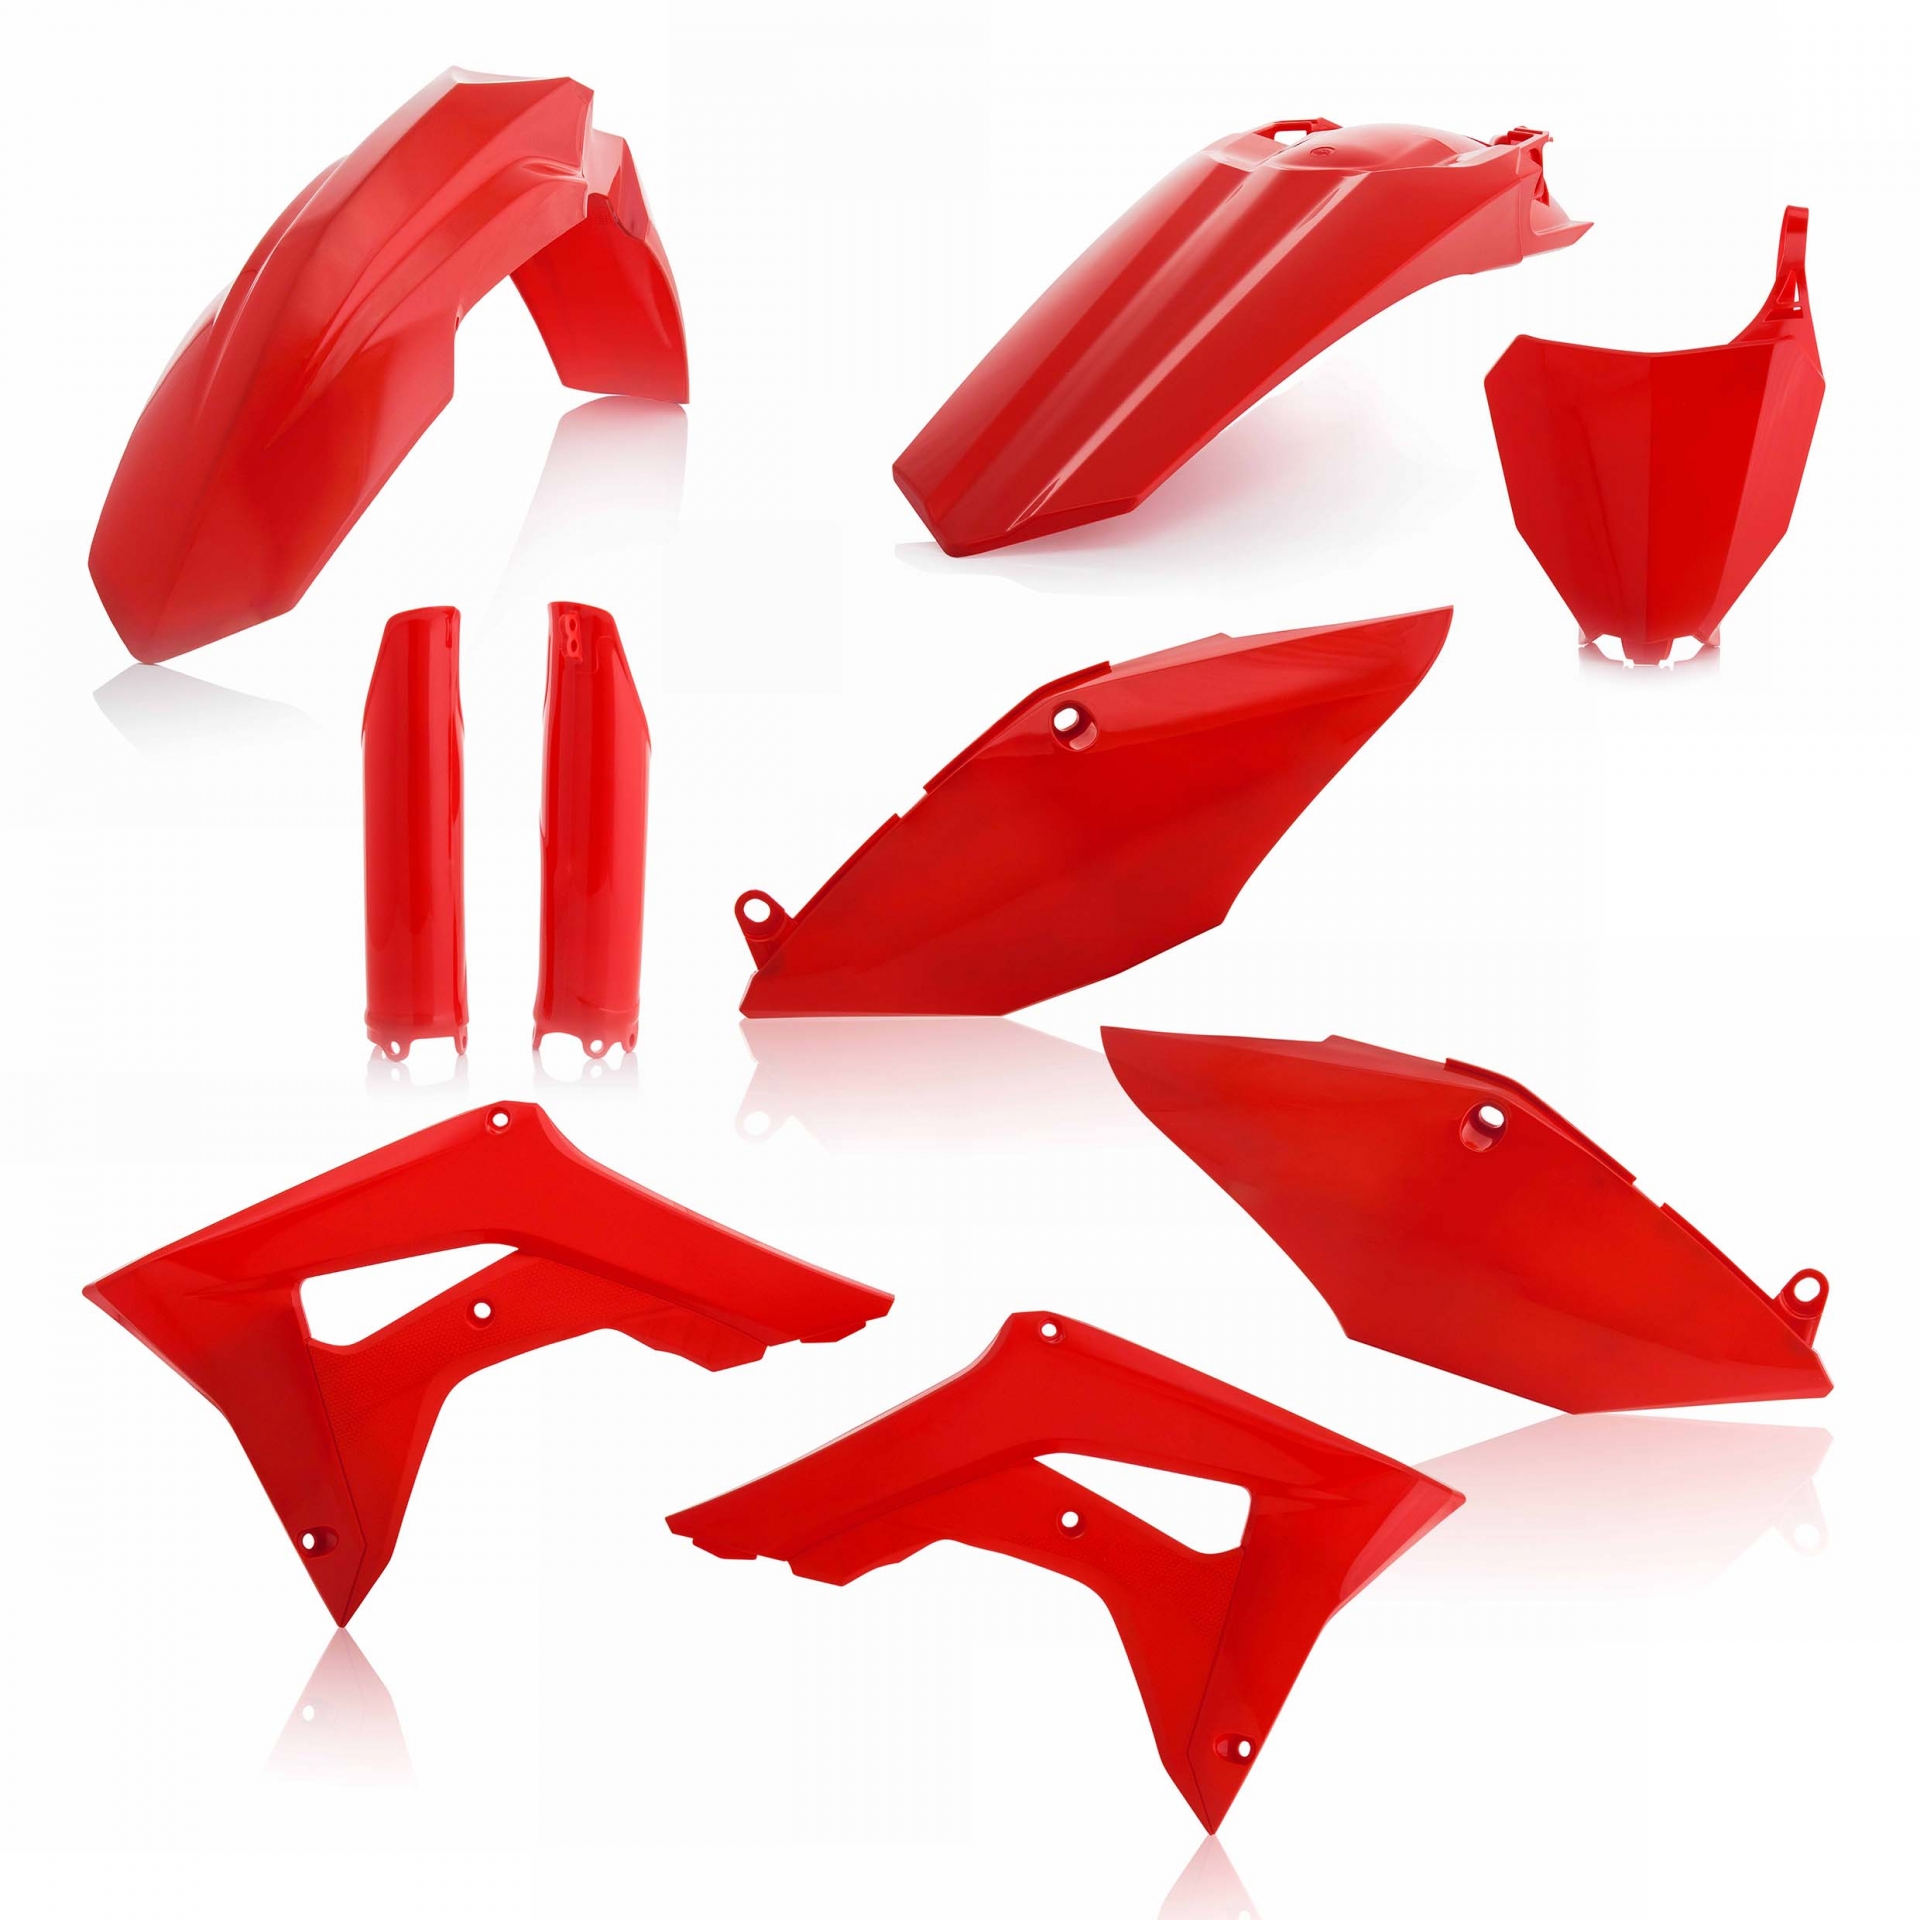 Plastikteile für deine Honda CRF / CR 250/450 in rot bestehend aus Kotflügel vorn Kotflügel hinten Kühlerspoiler Seitenteile Gabelschützer Startnummerntafel